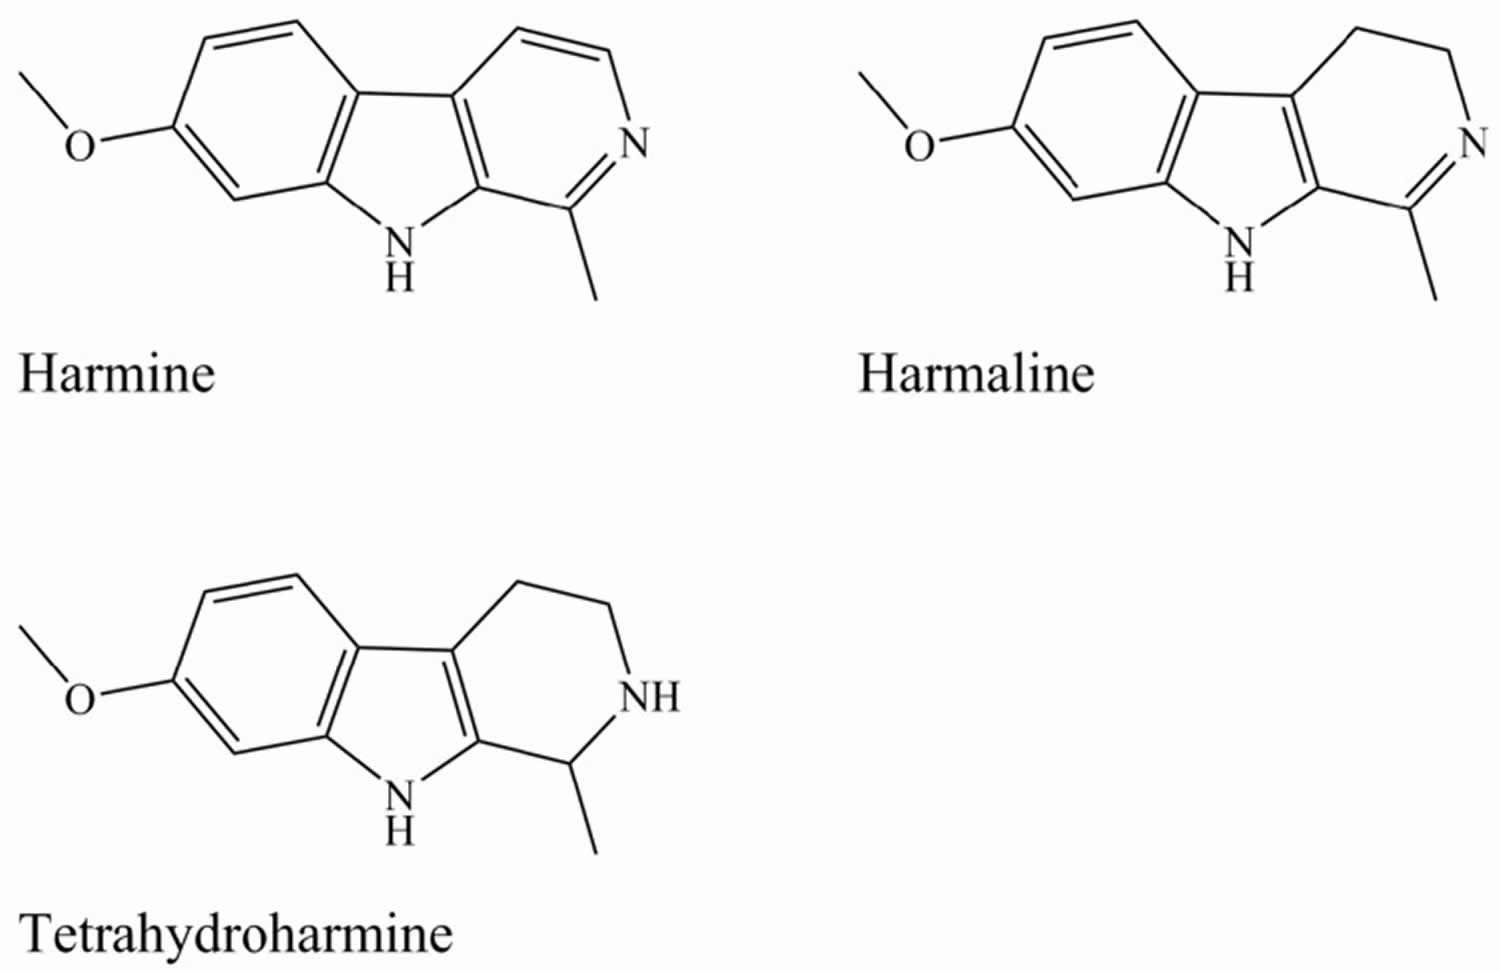 Beta-carbolines